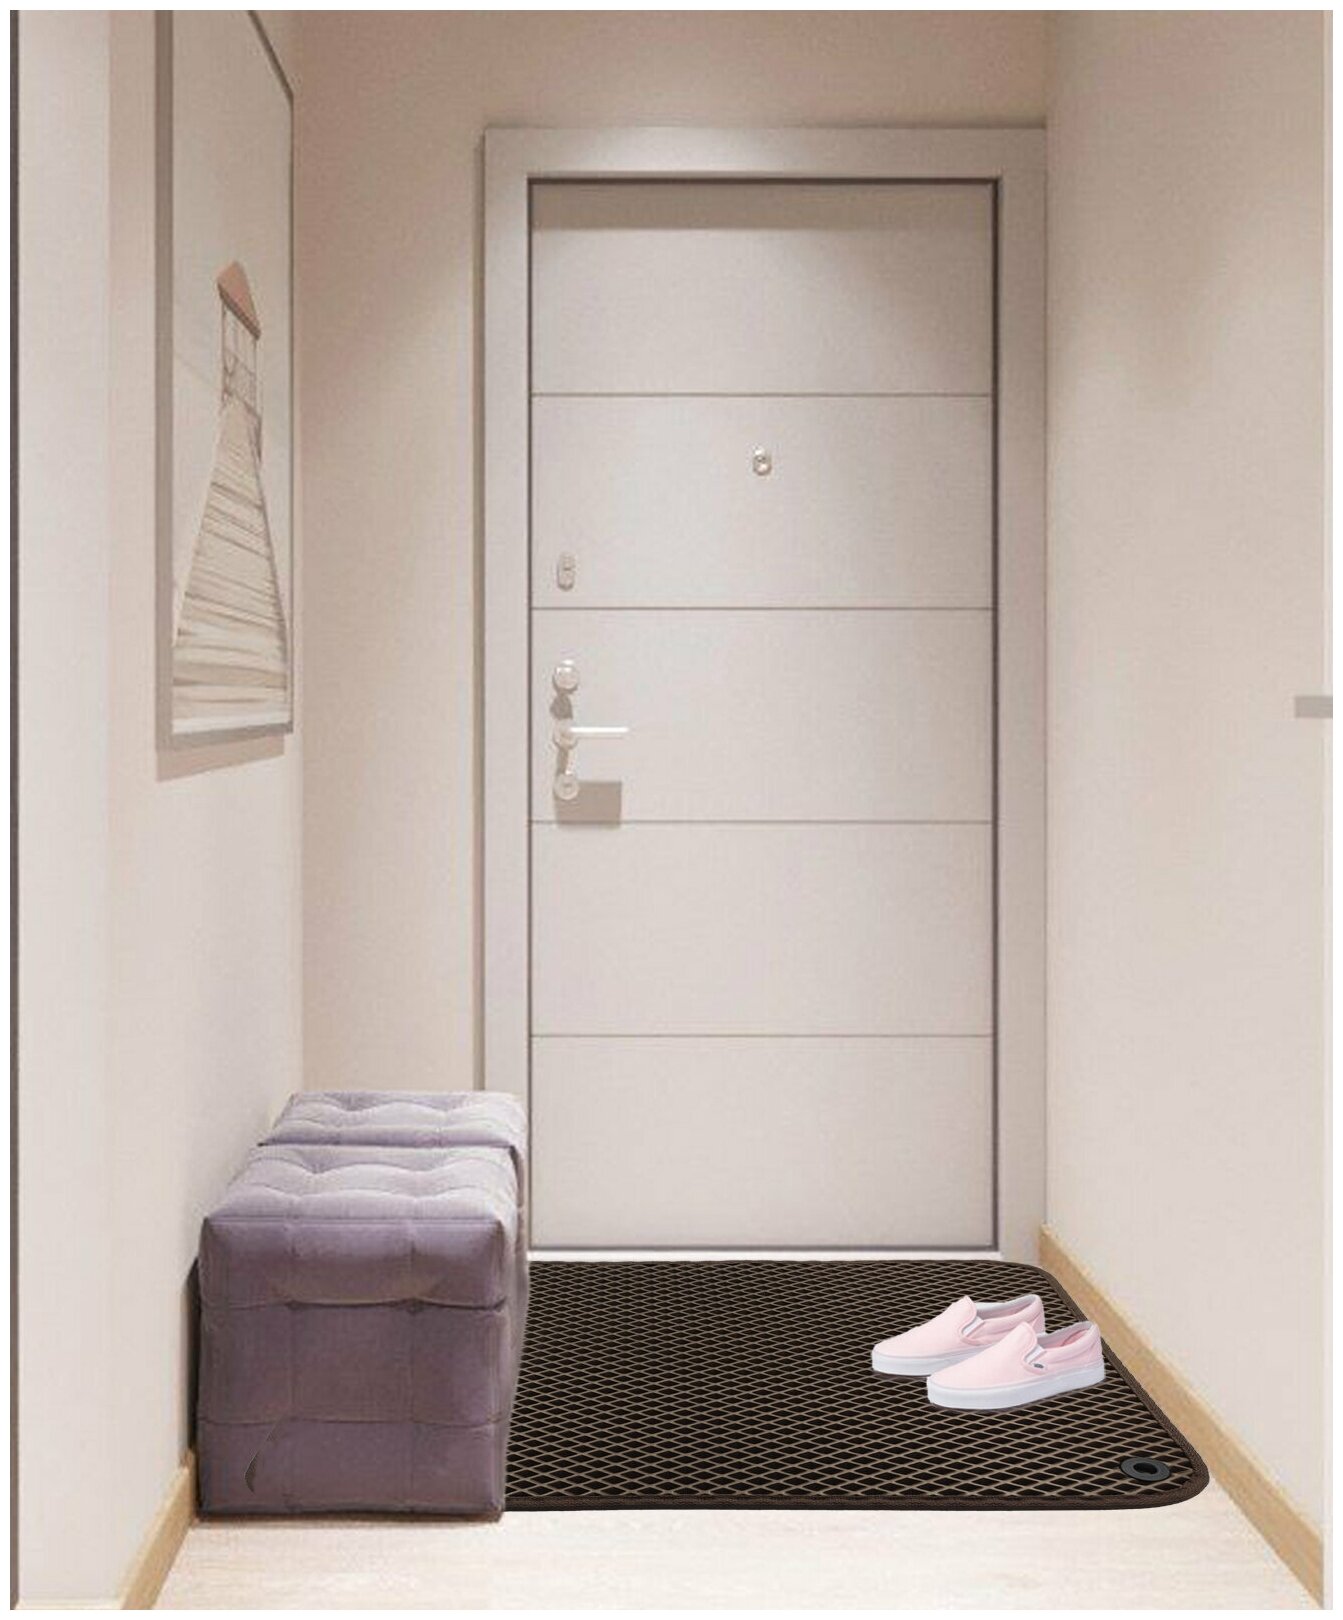 Грязезащитный придверный резиновый коврик в прихожую из EVA для обуви, для ванной, туалета, 0.4 х 0.55 м, коричневый ромб - фотография № 2